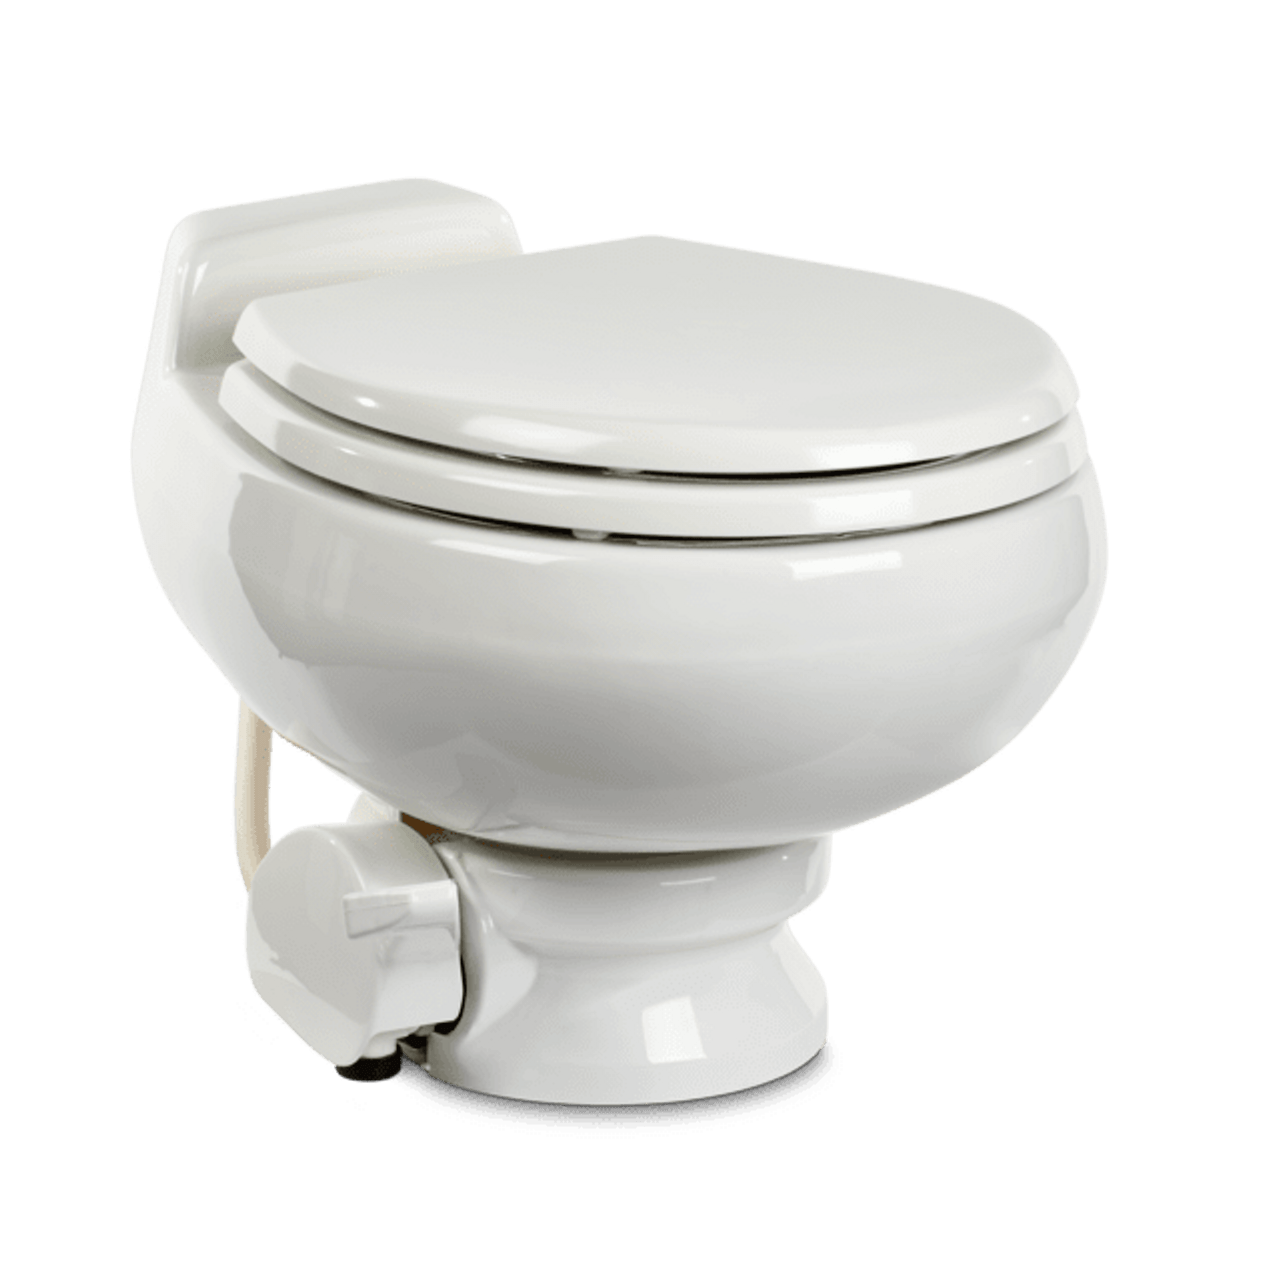 Dometic 511 series white toilet